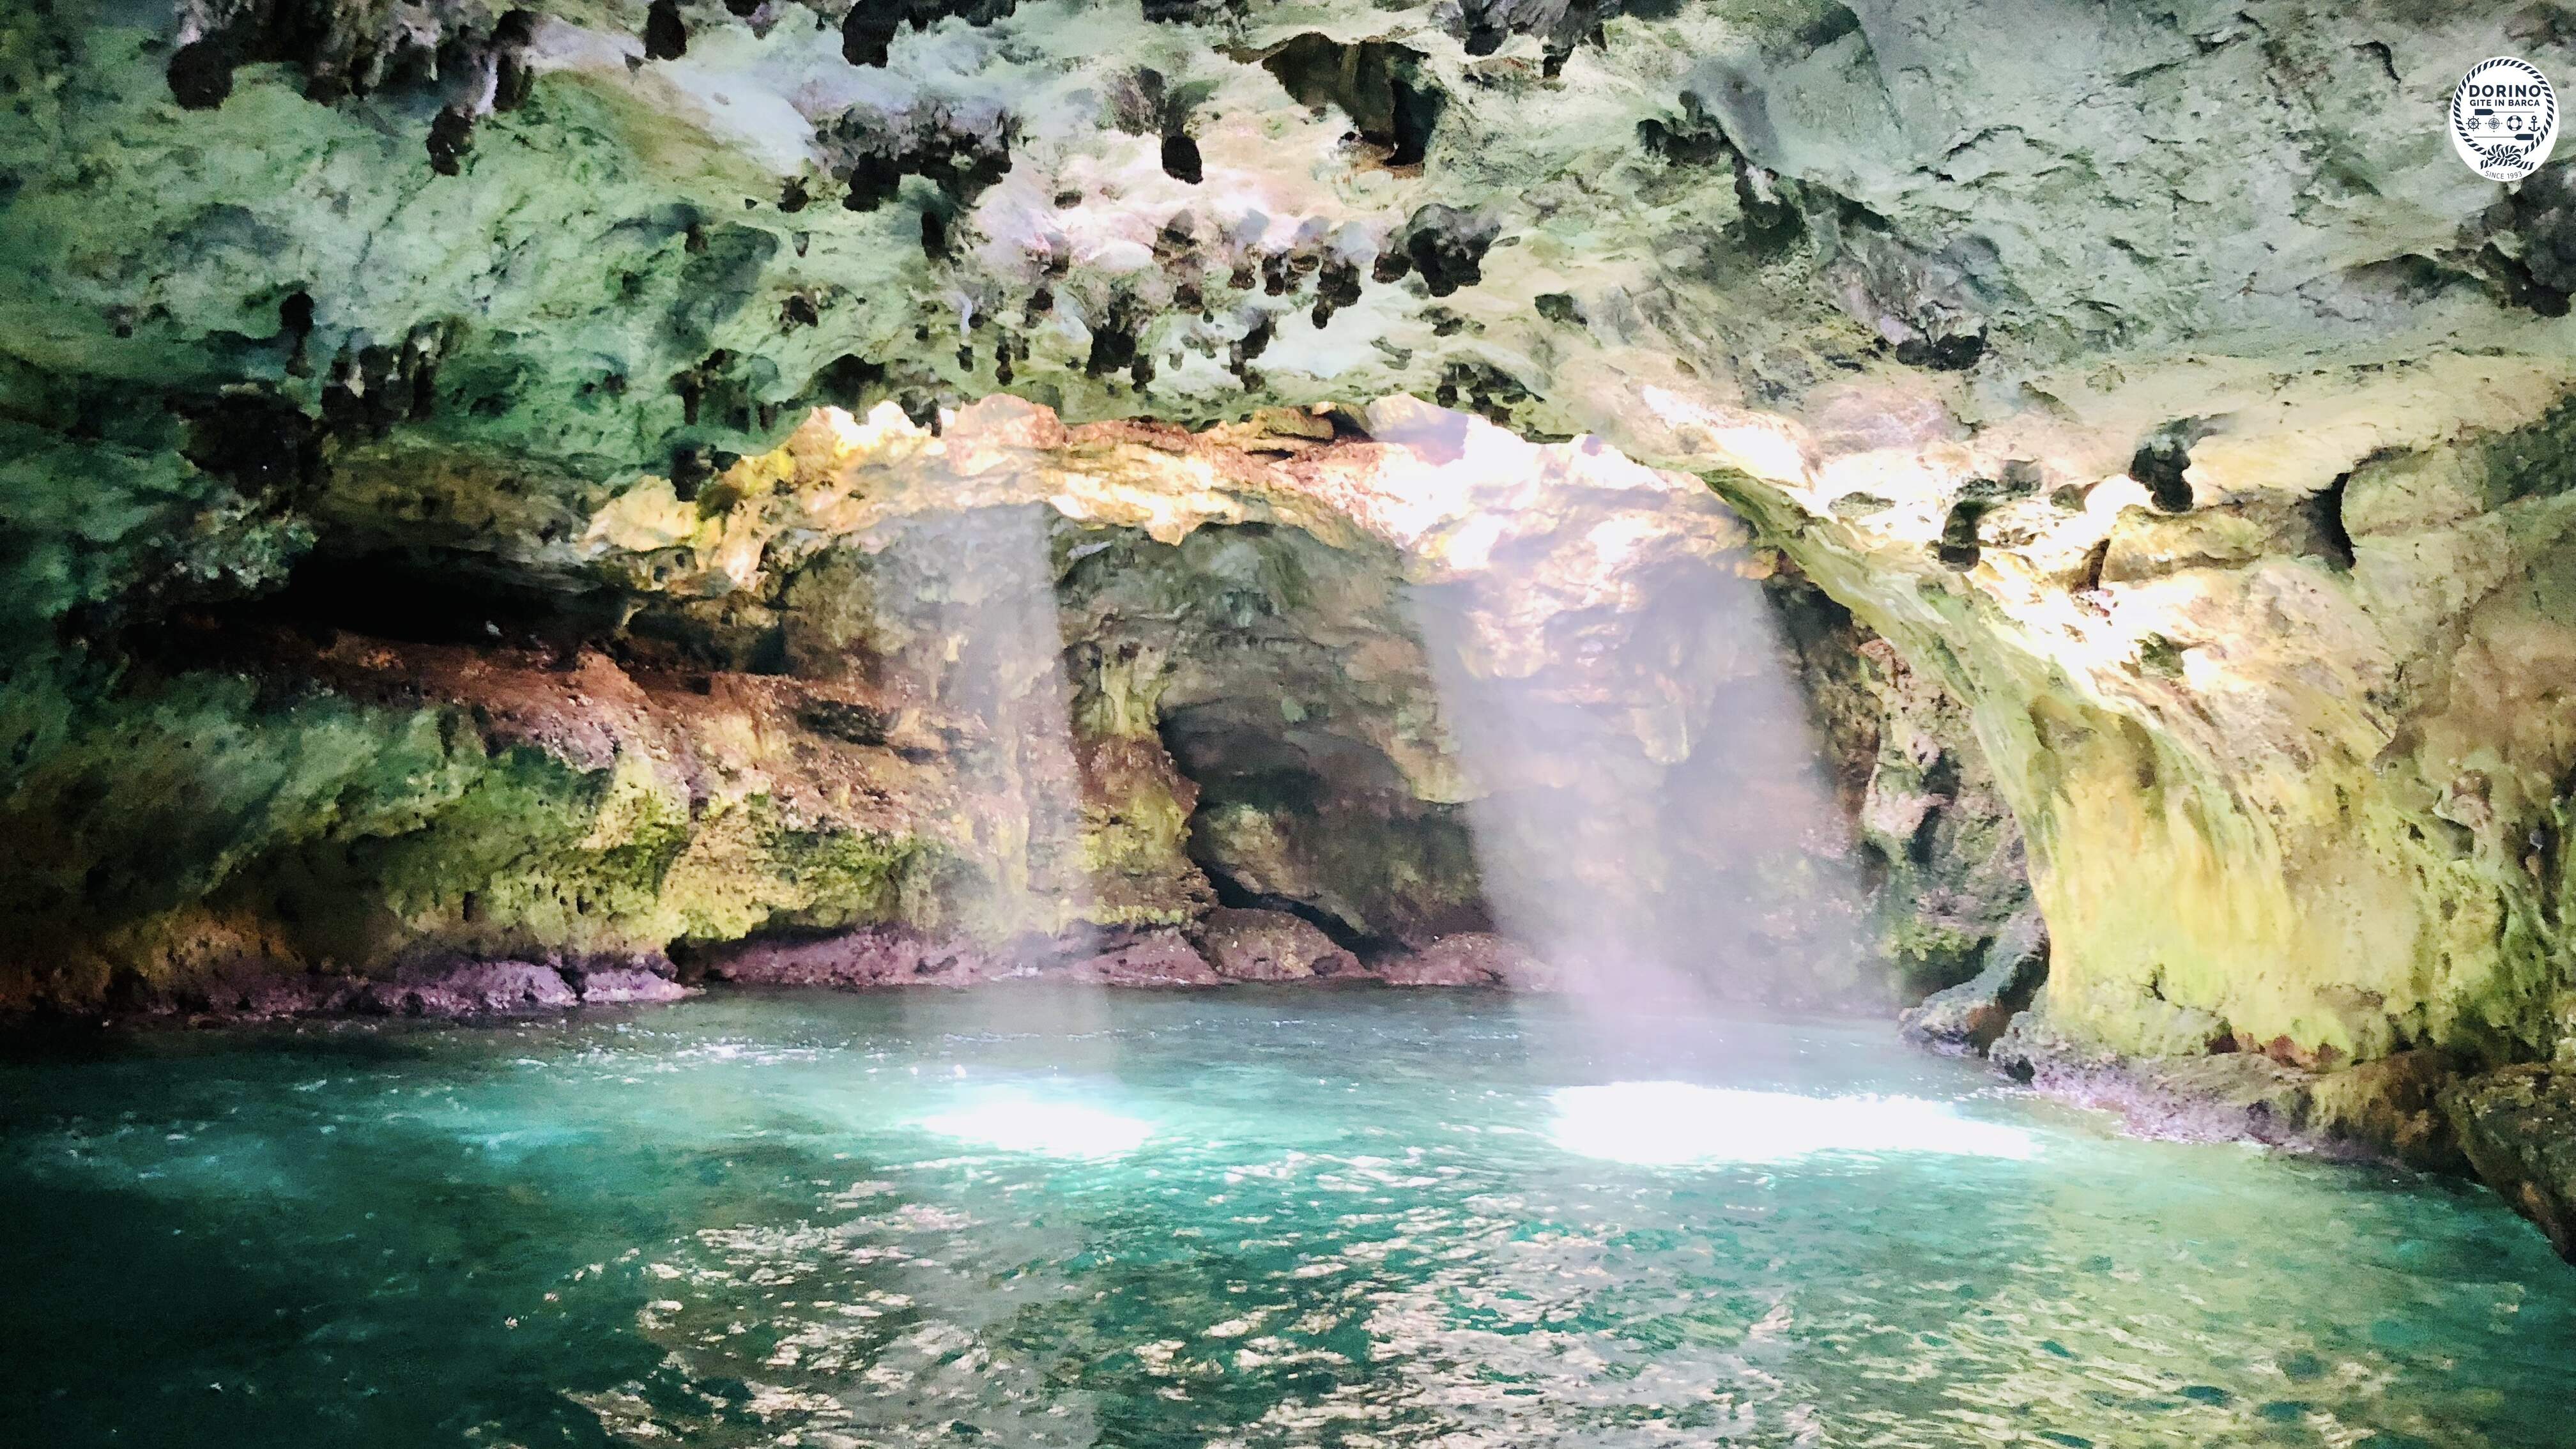 Una delle Grotte marine più belle del mondo a Polignano a Mare